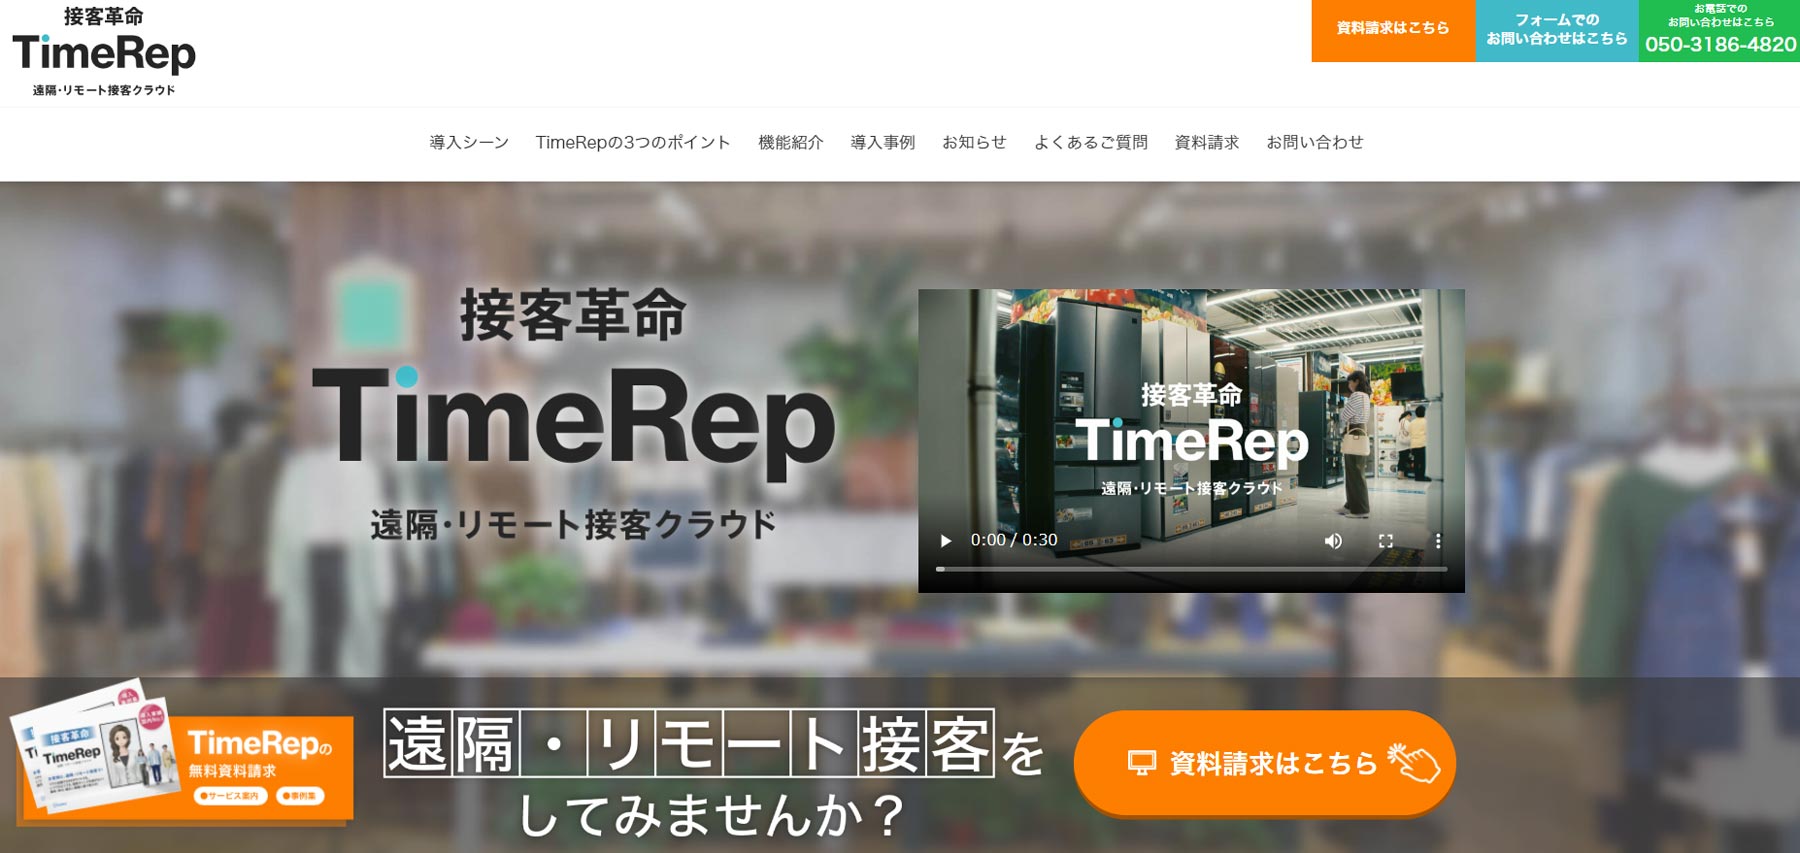 TimeRep公式Webサイト